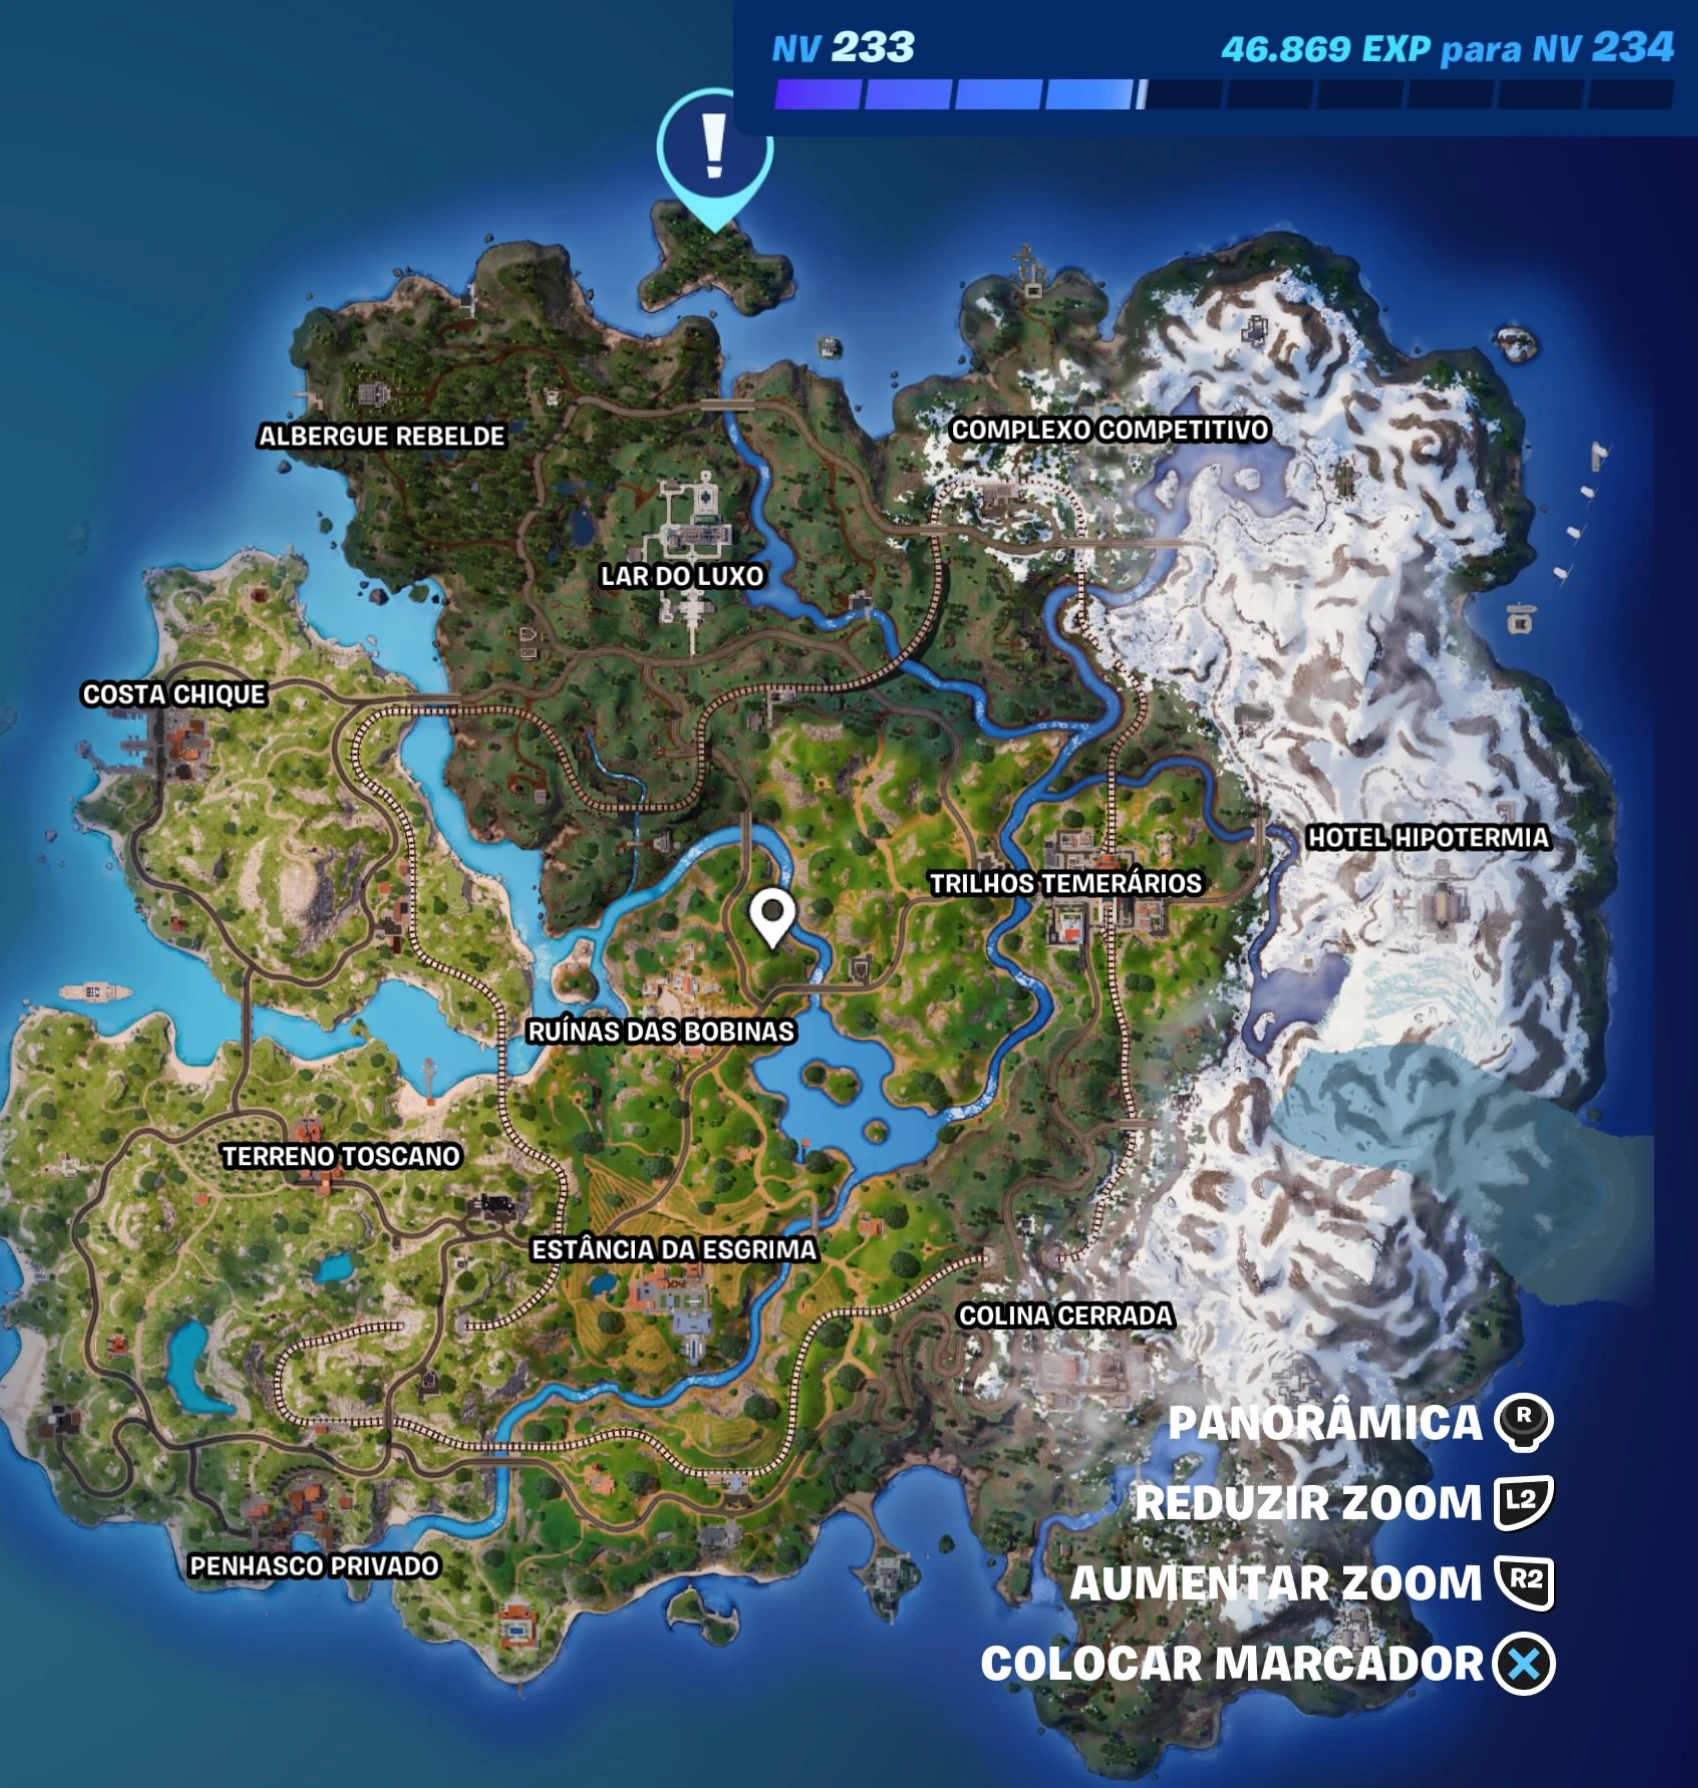 Fortnite - Mapa com a localização do Solid Snake na ilha - Capítulo 5